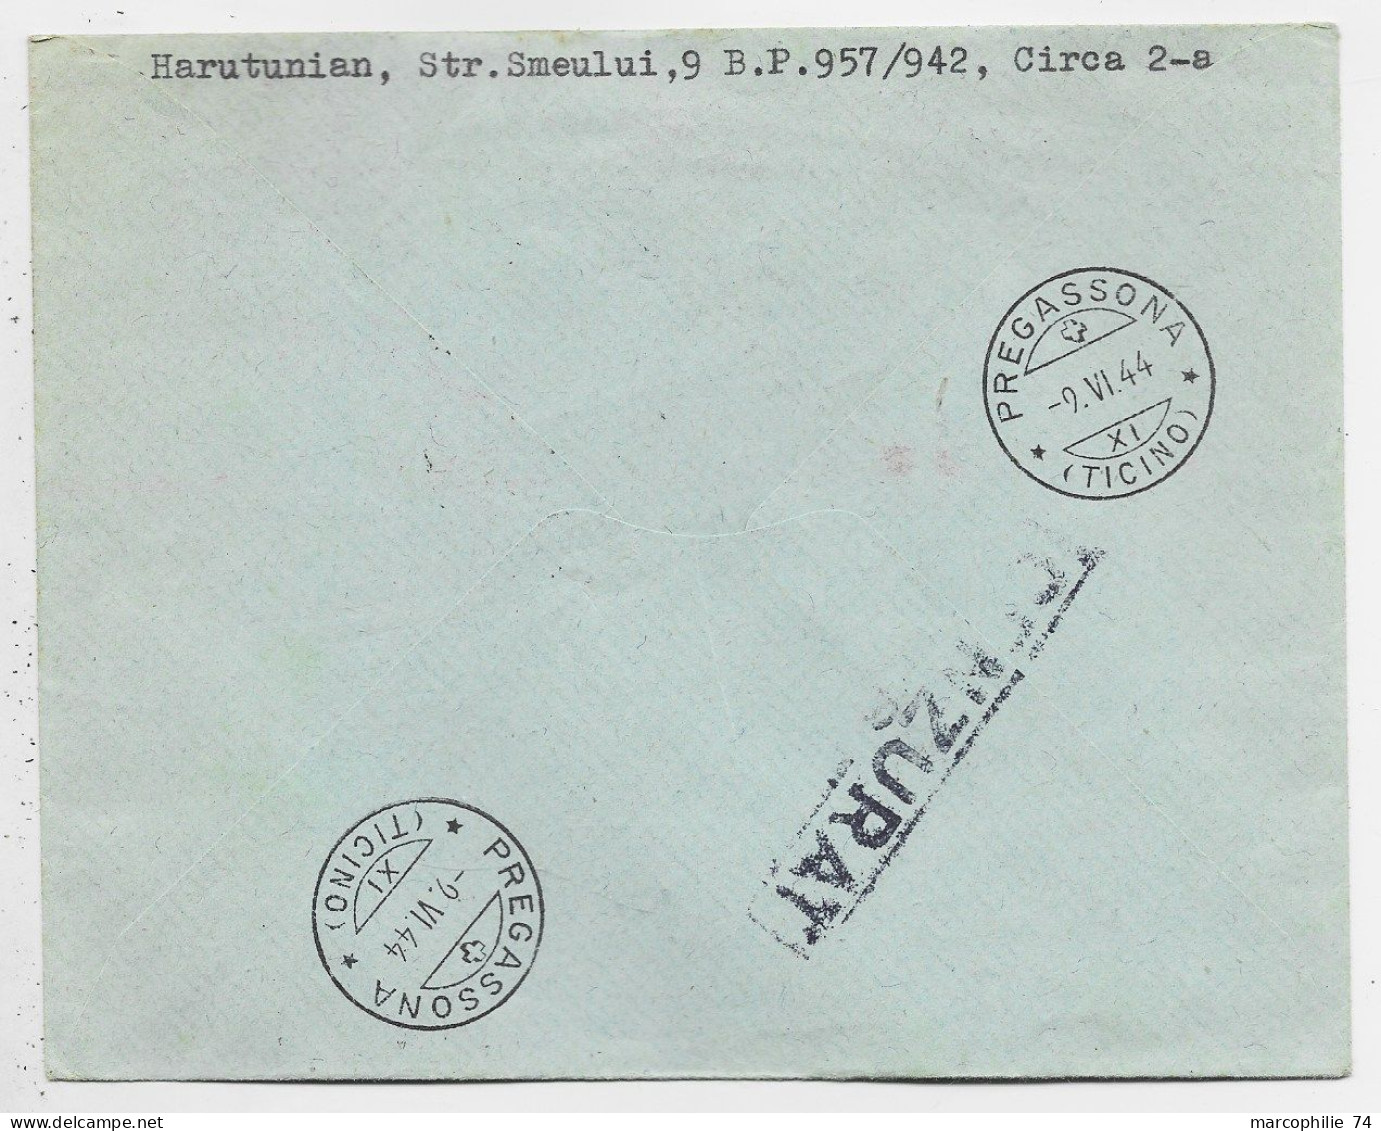 ROMANIA ROUMANIE 2 LEI + EMA 40.00 LETTRE REC COVER BUCURESTI 1944 LUGANO PREGASSONA SUISSE ZENZURAT - Briefe U. Dokumente